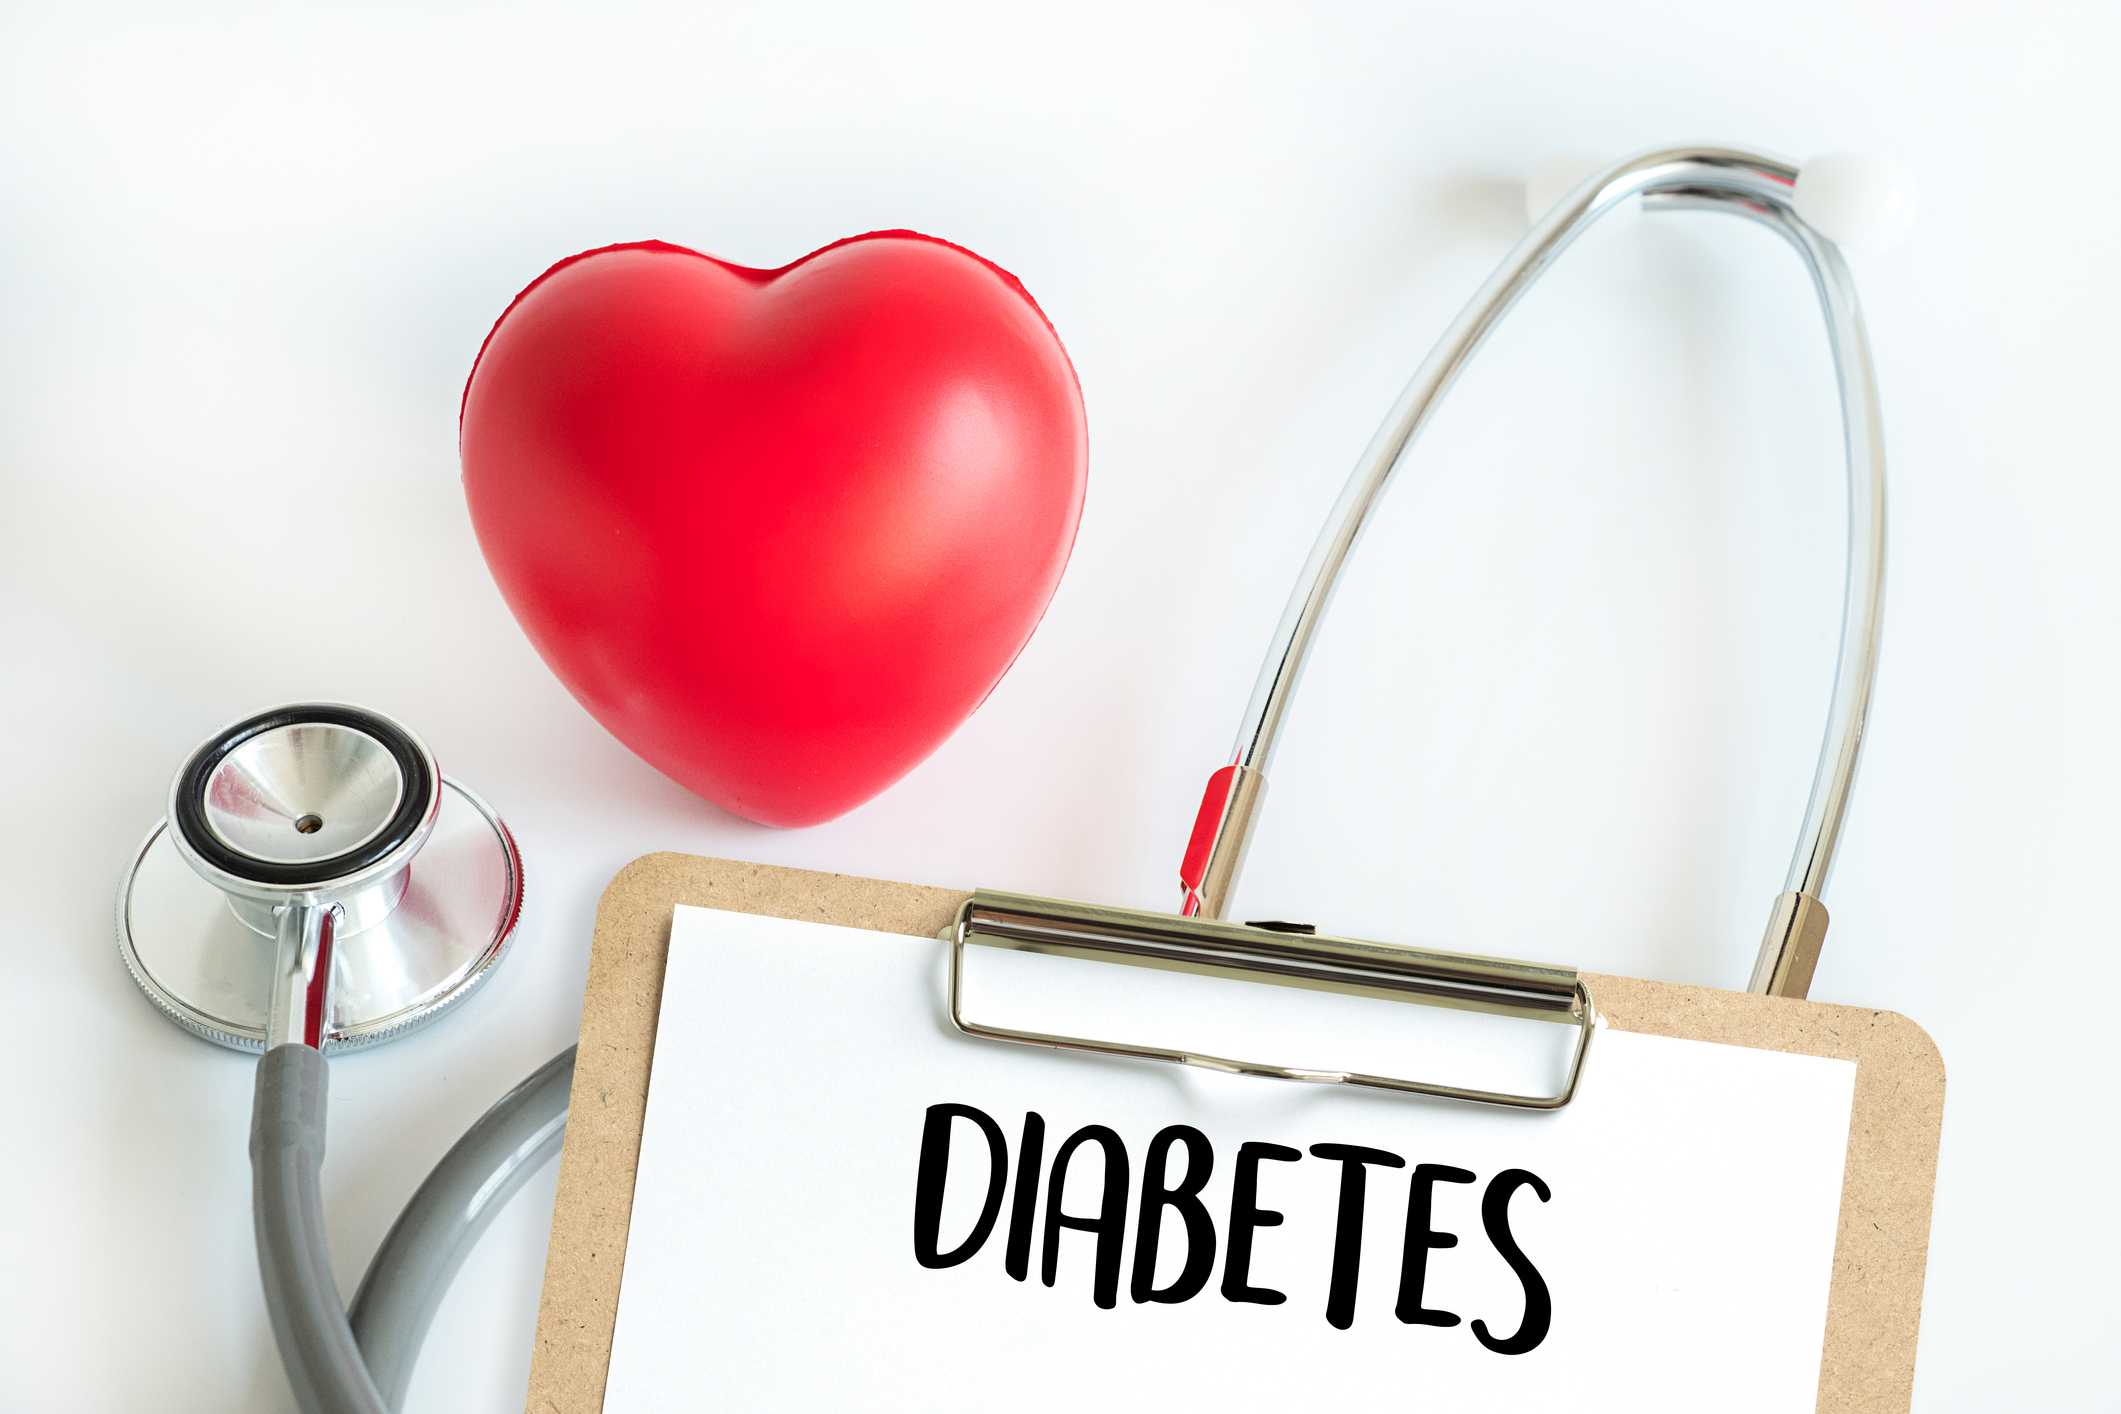 diabetes training uk a kezelés a cukorbetegség 2 szóda